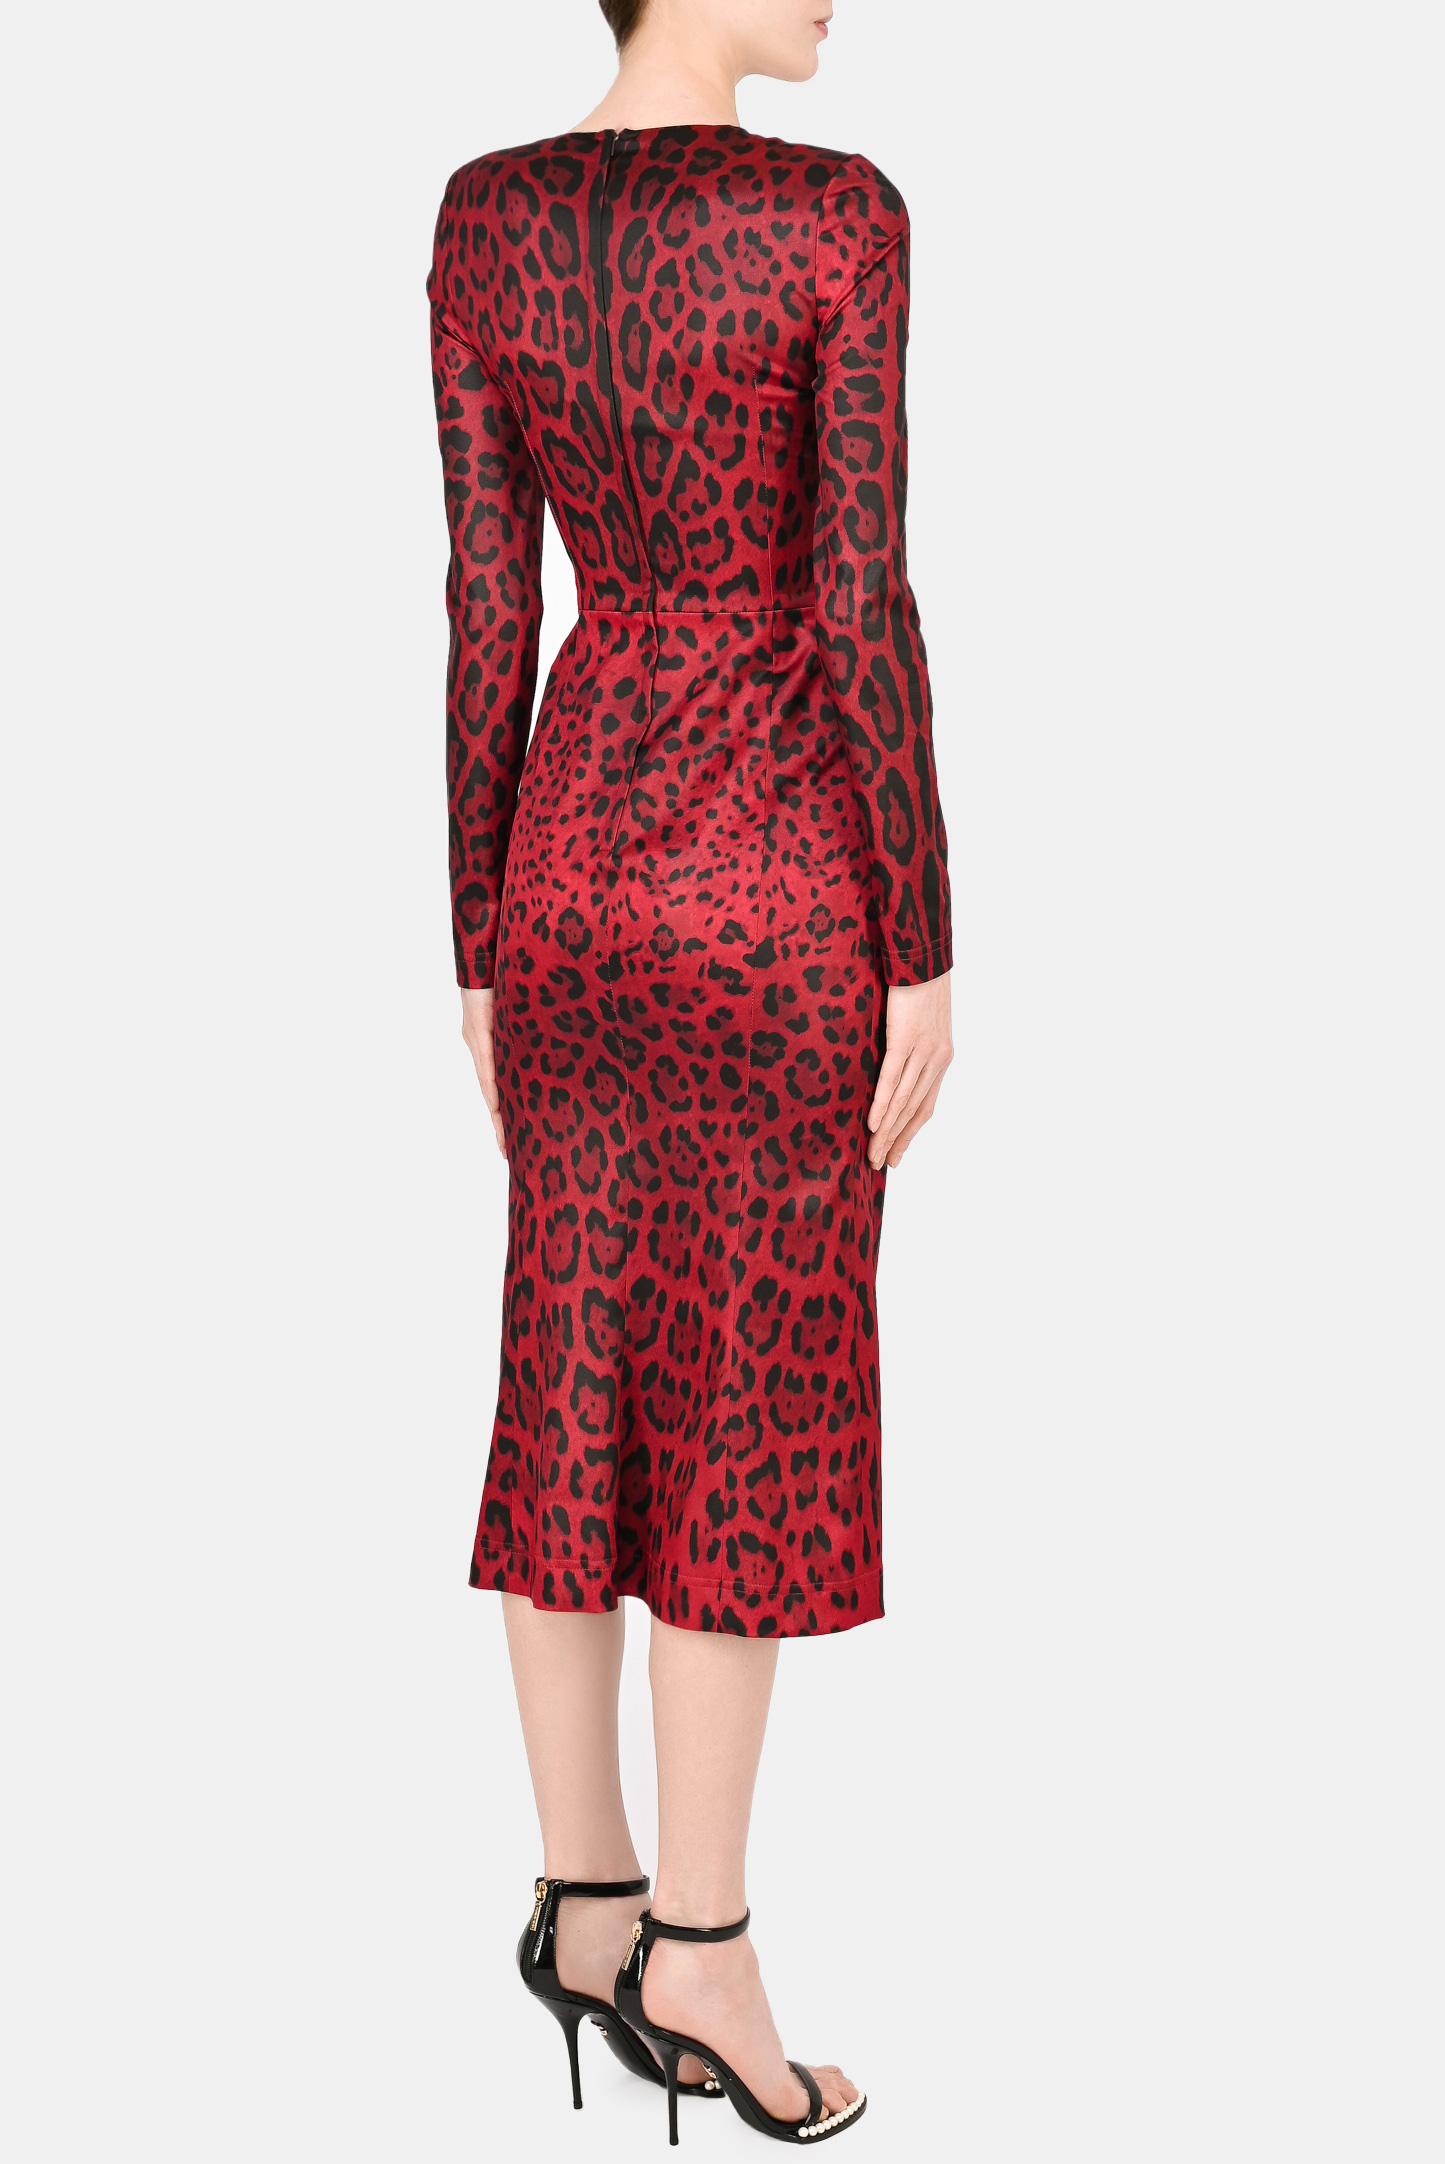 Платье DOLCE & GABBANA F6W3TT FSSGW, цвет: Красный, Женский